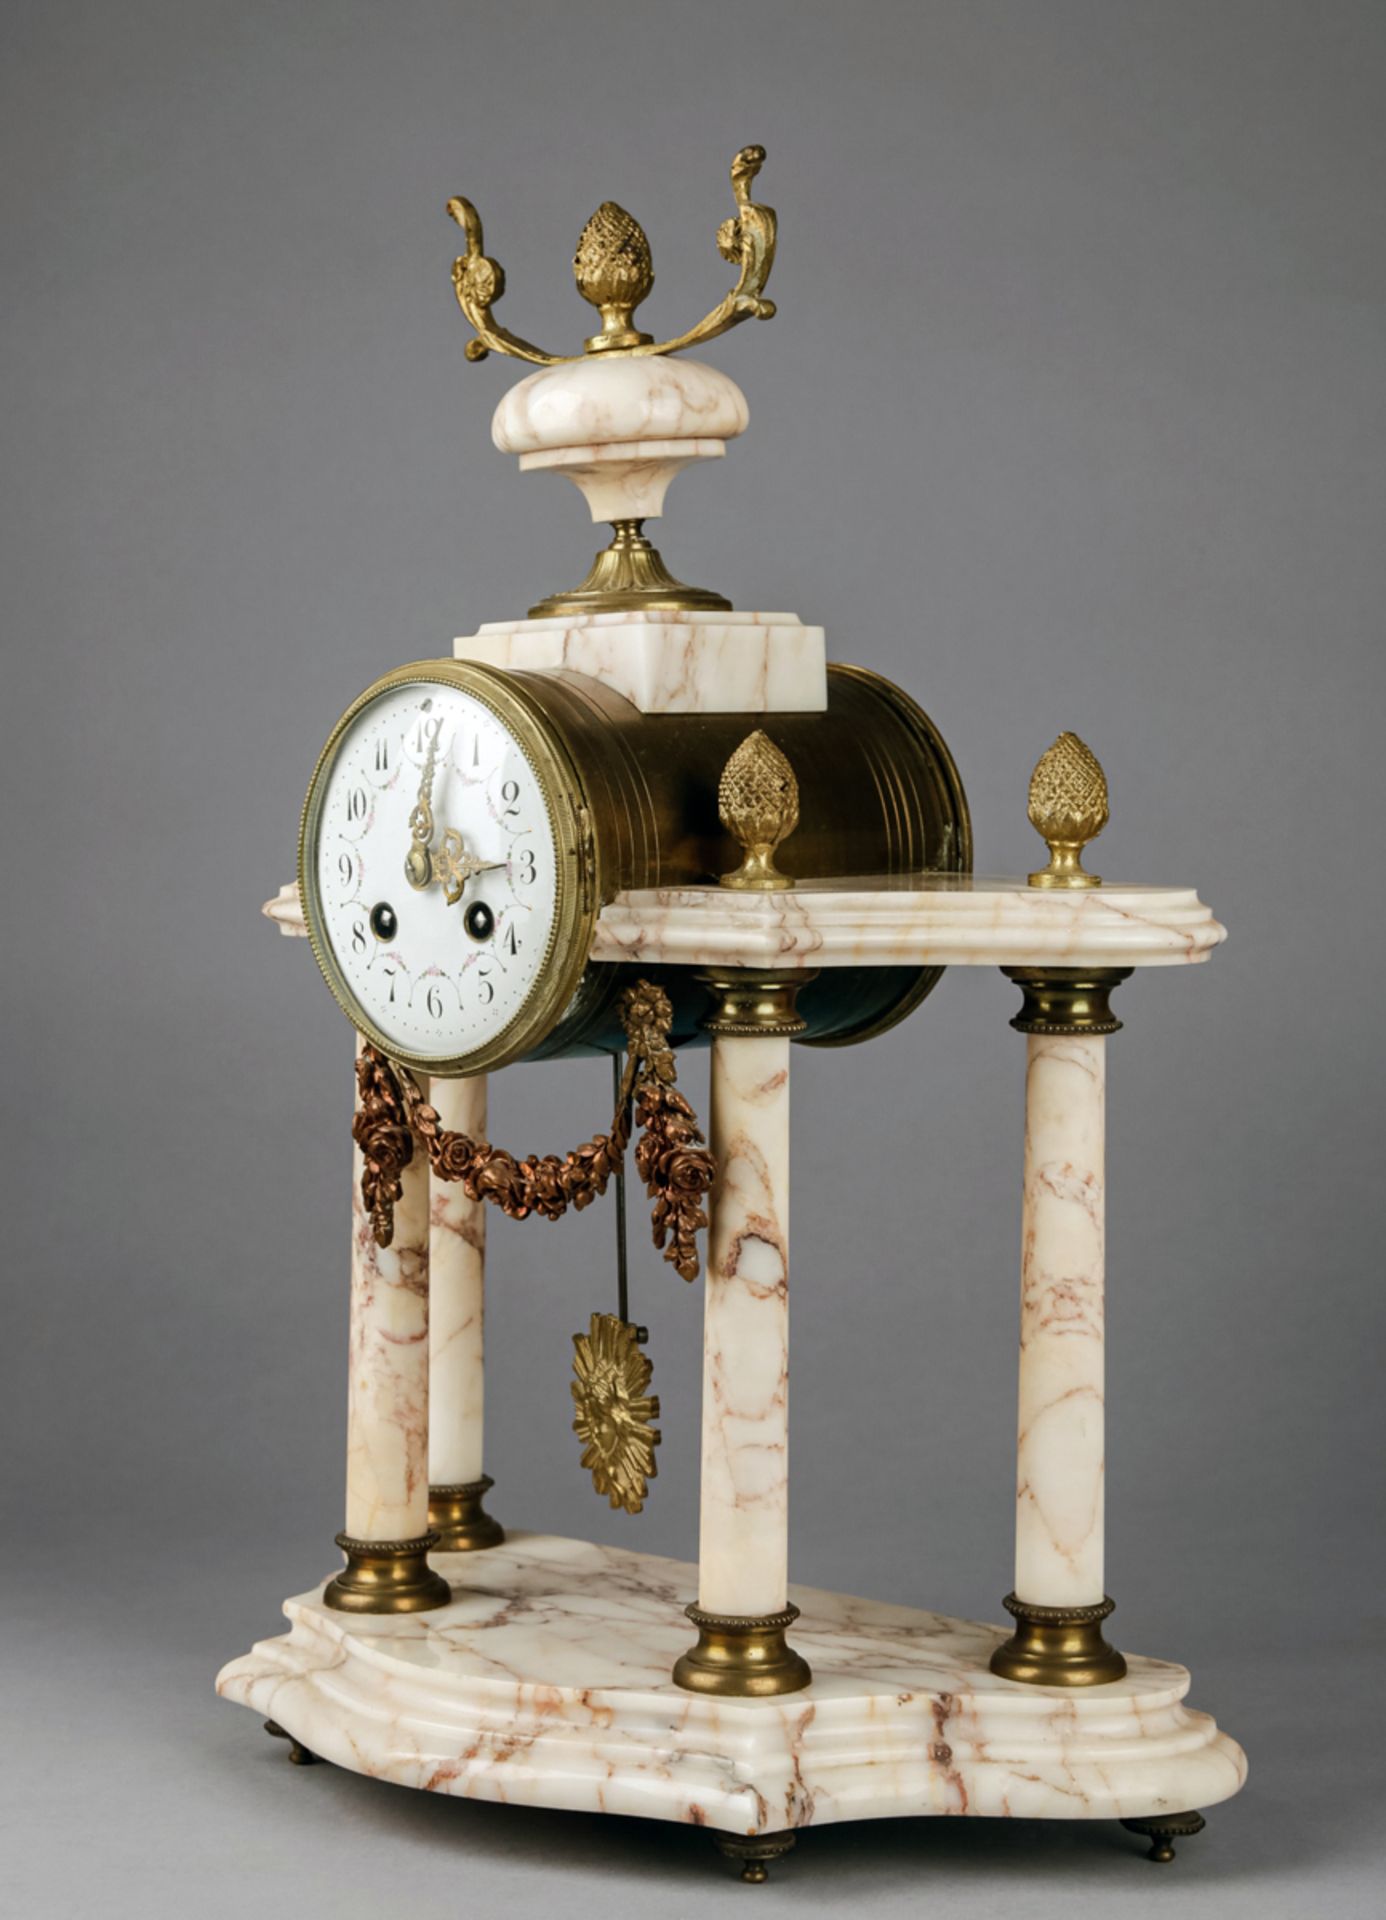 Uhrengarnitur-Pendule mit Ziervasen, Frankreich, um 1900, Werk gemarkt H & C Paris - Bild 3 aus 7